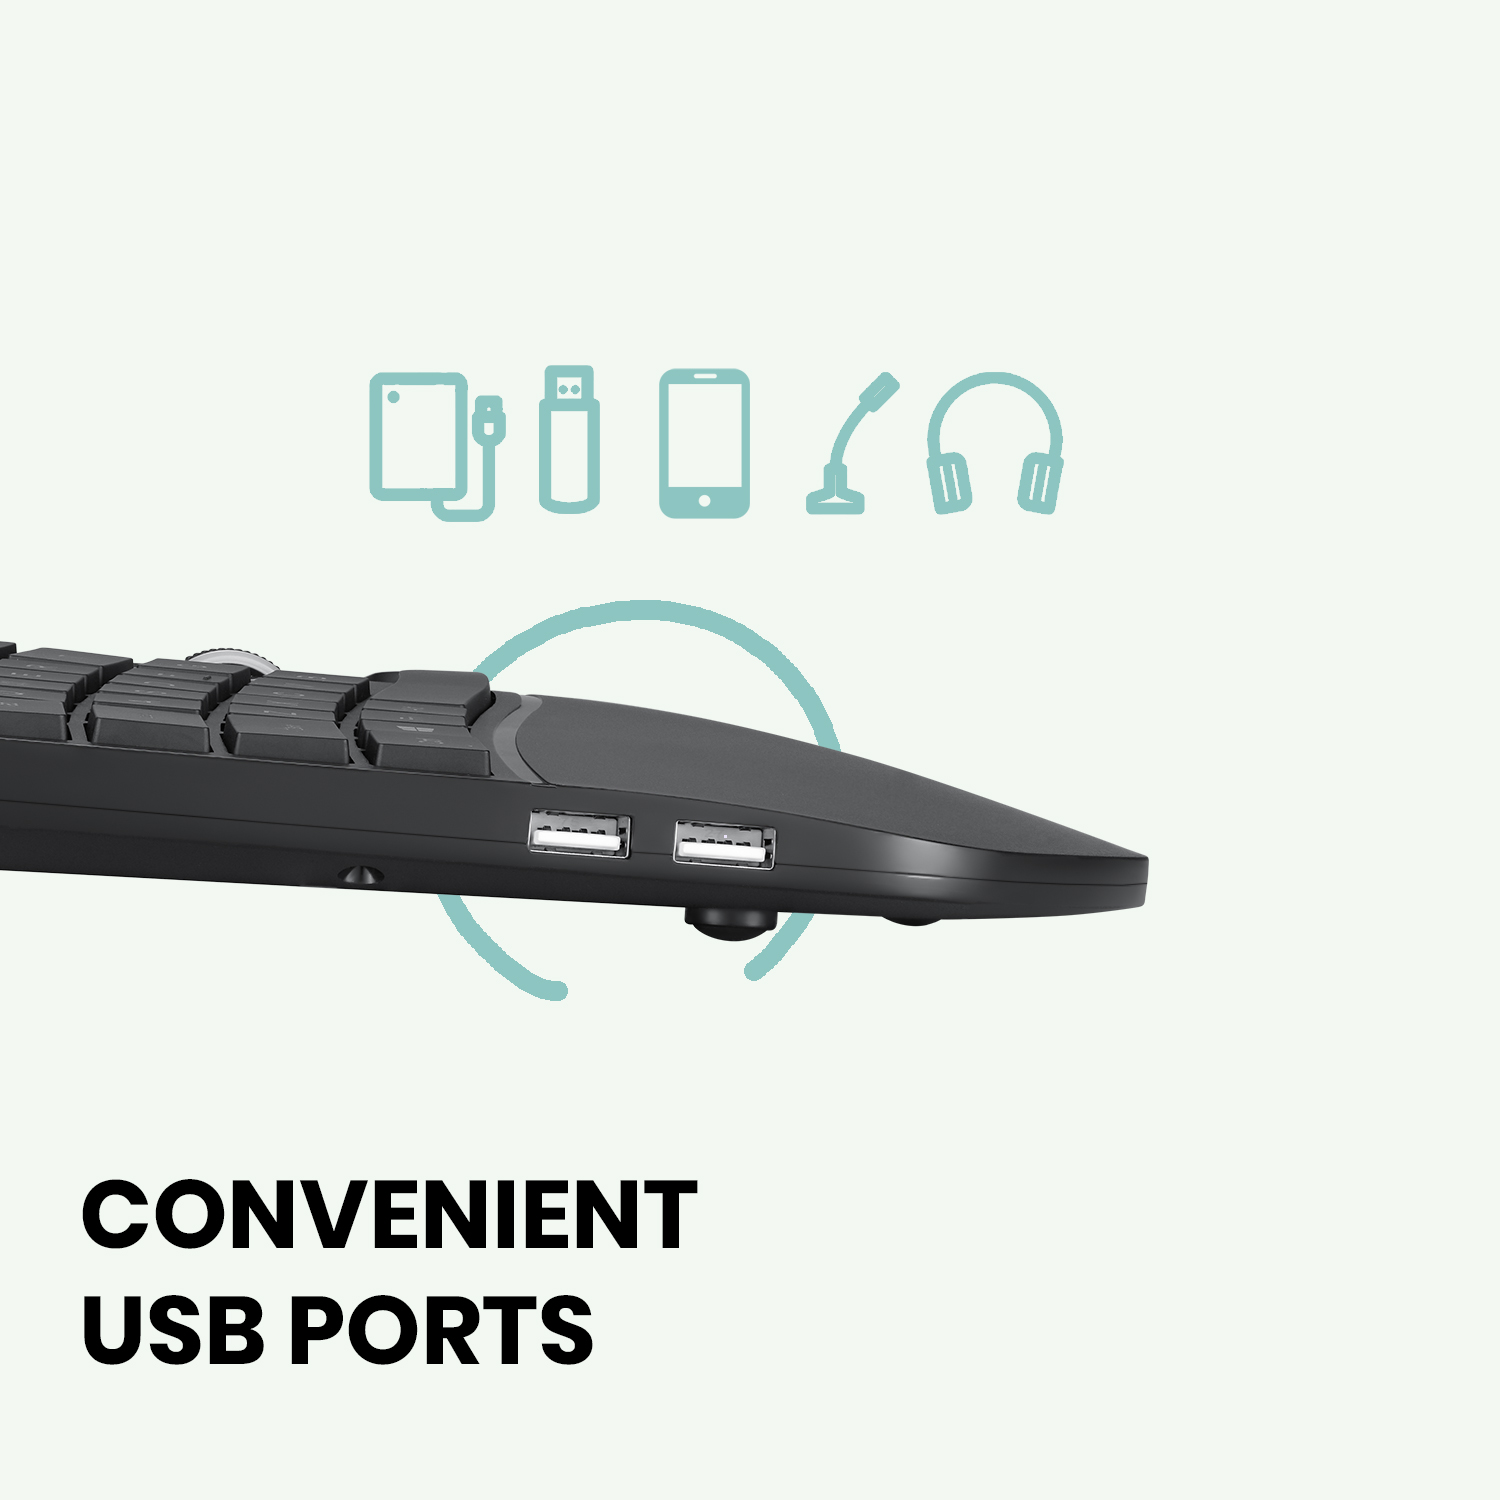 Convenient USB Ports